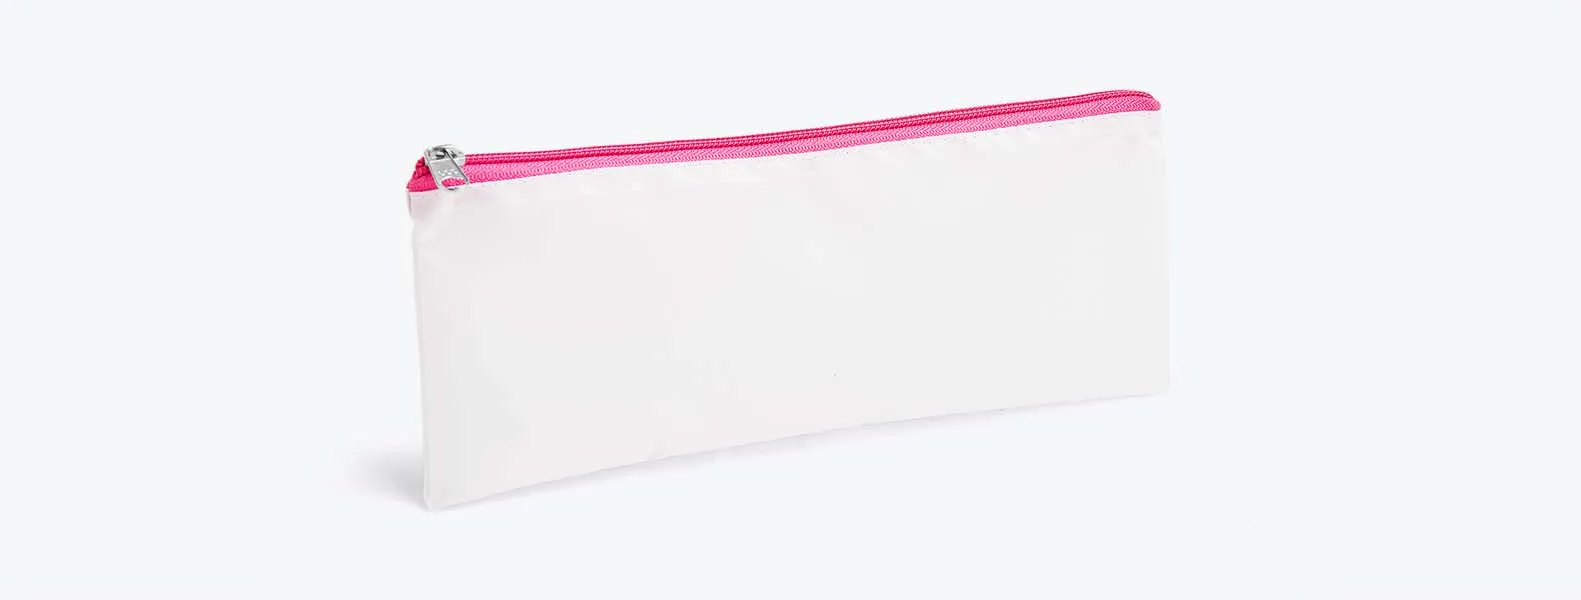 Necessaire com zíper rosa confeccionada em Nylon 210 resinado. Conta com fechamento em zíper nas cores preta, azul, vermelha, verde, amarelo, laranja, roxo e rosa.